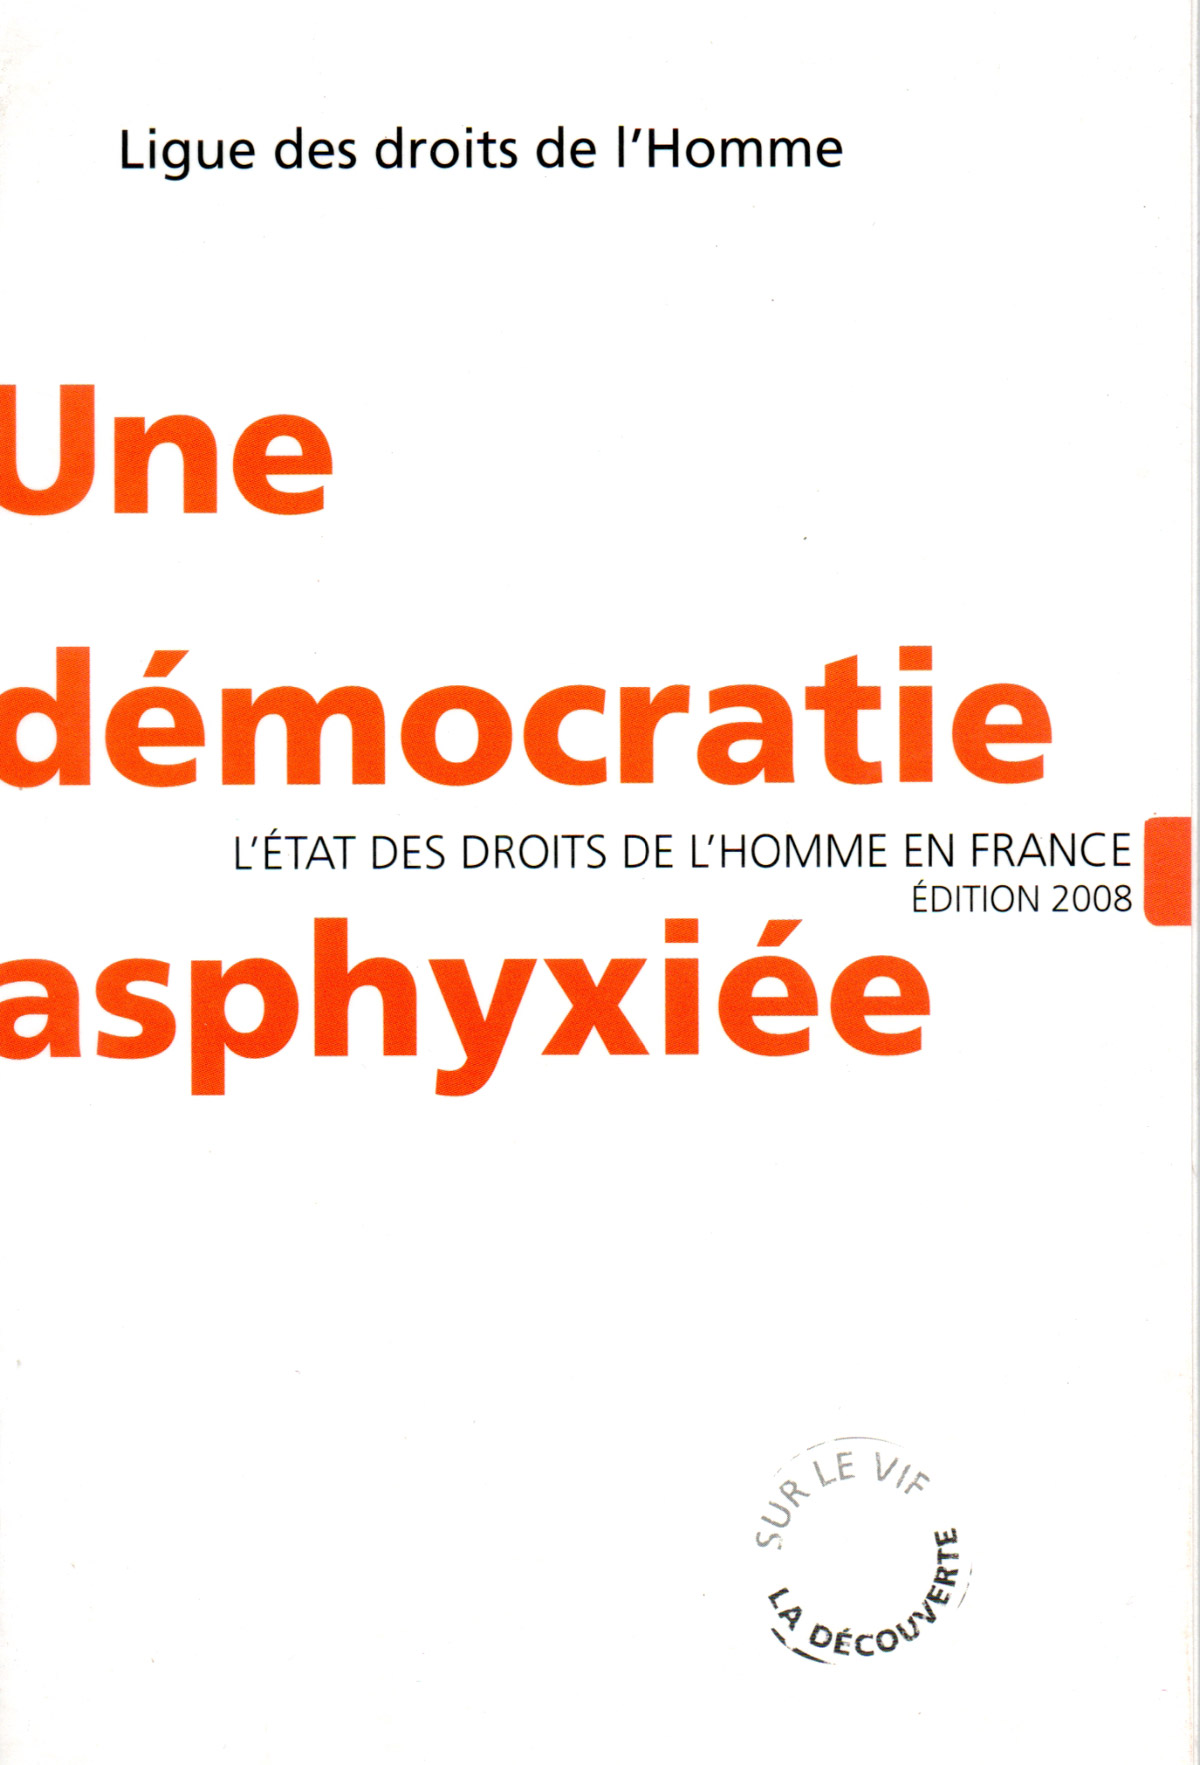 Une démocratie asphyxiée, éd. La Découverte, 2008